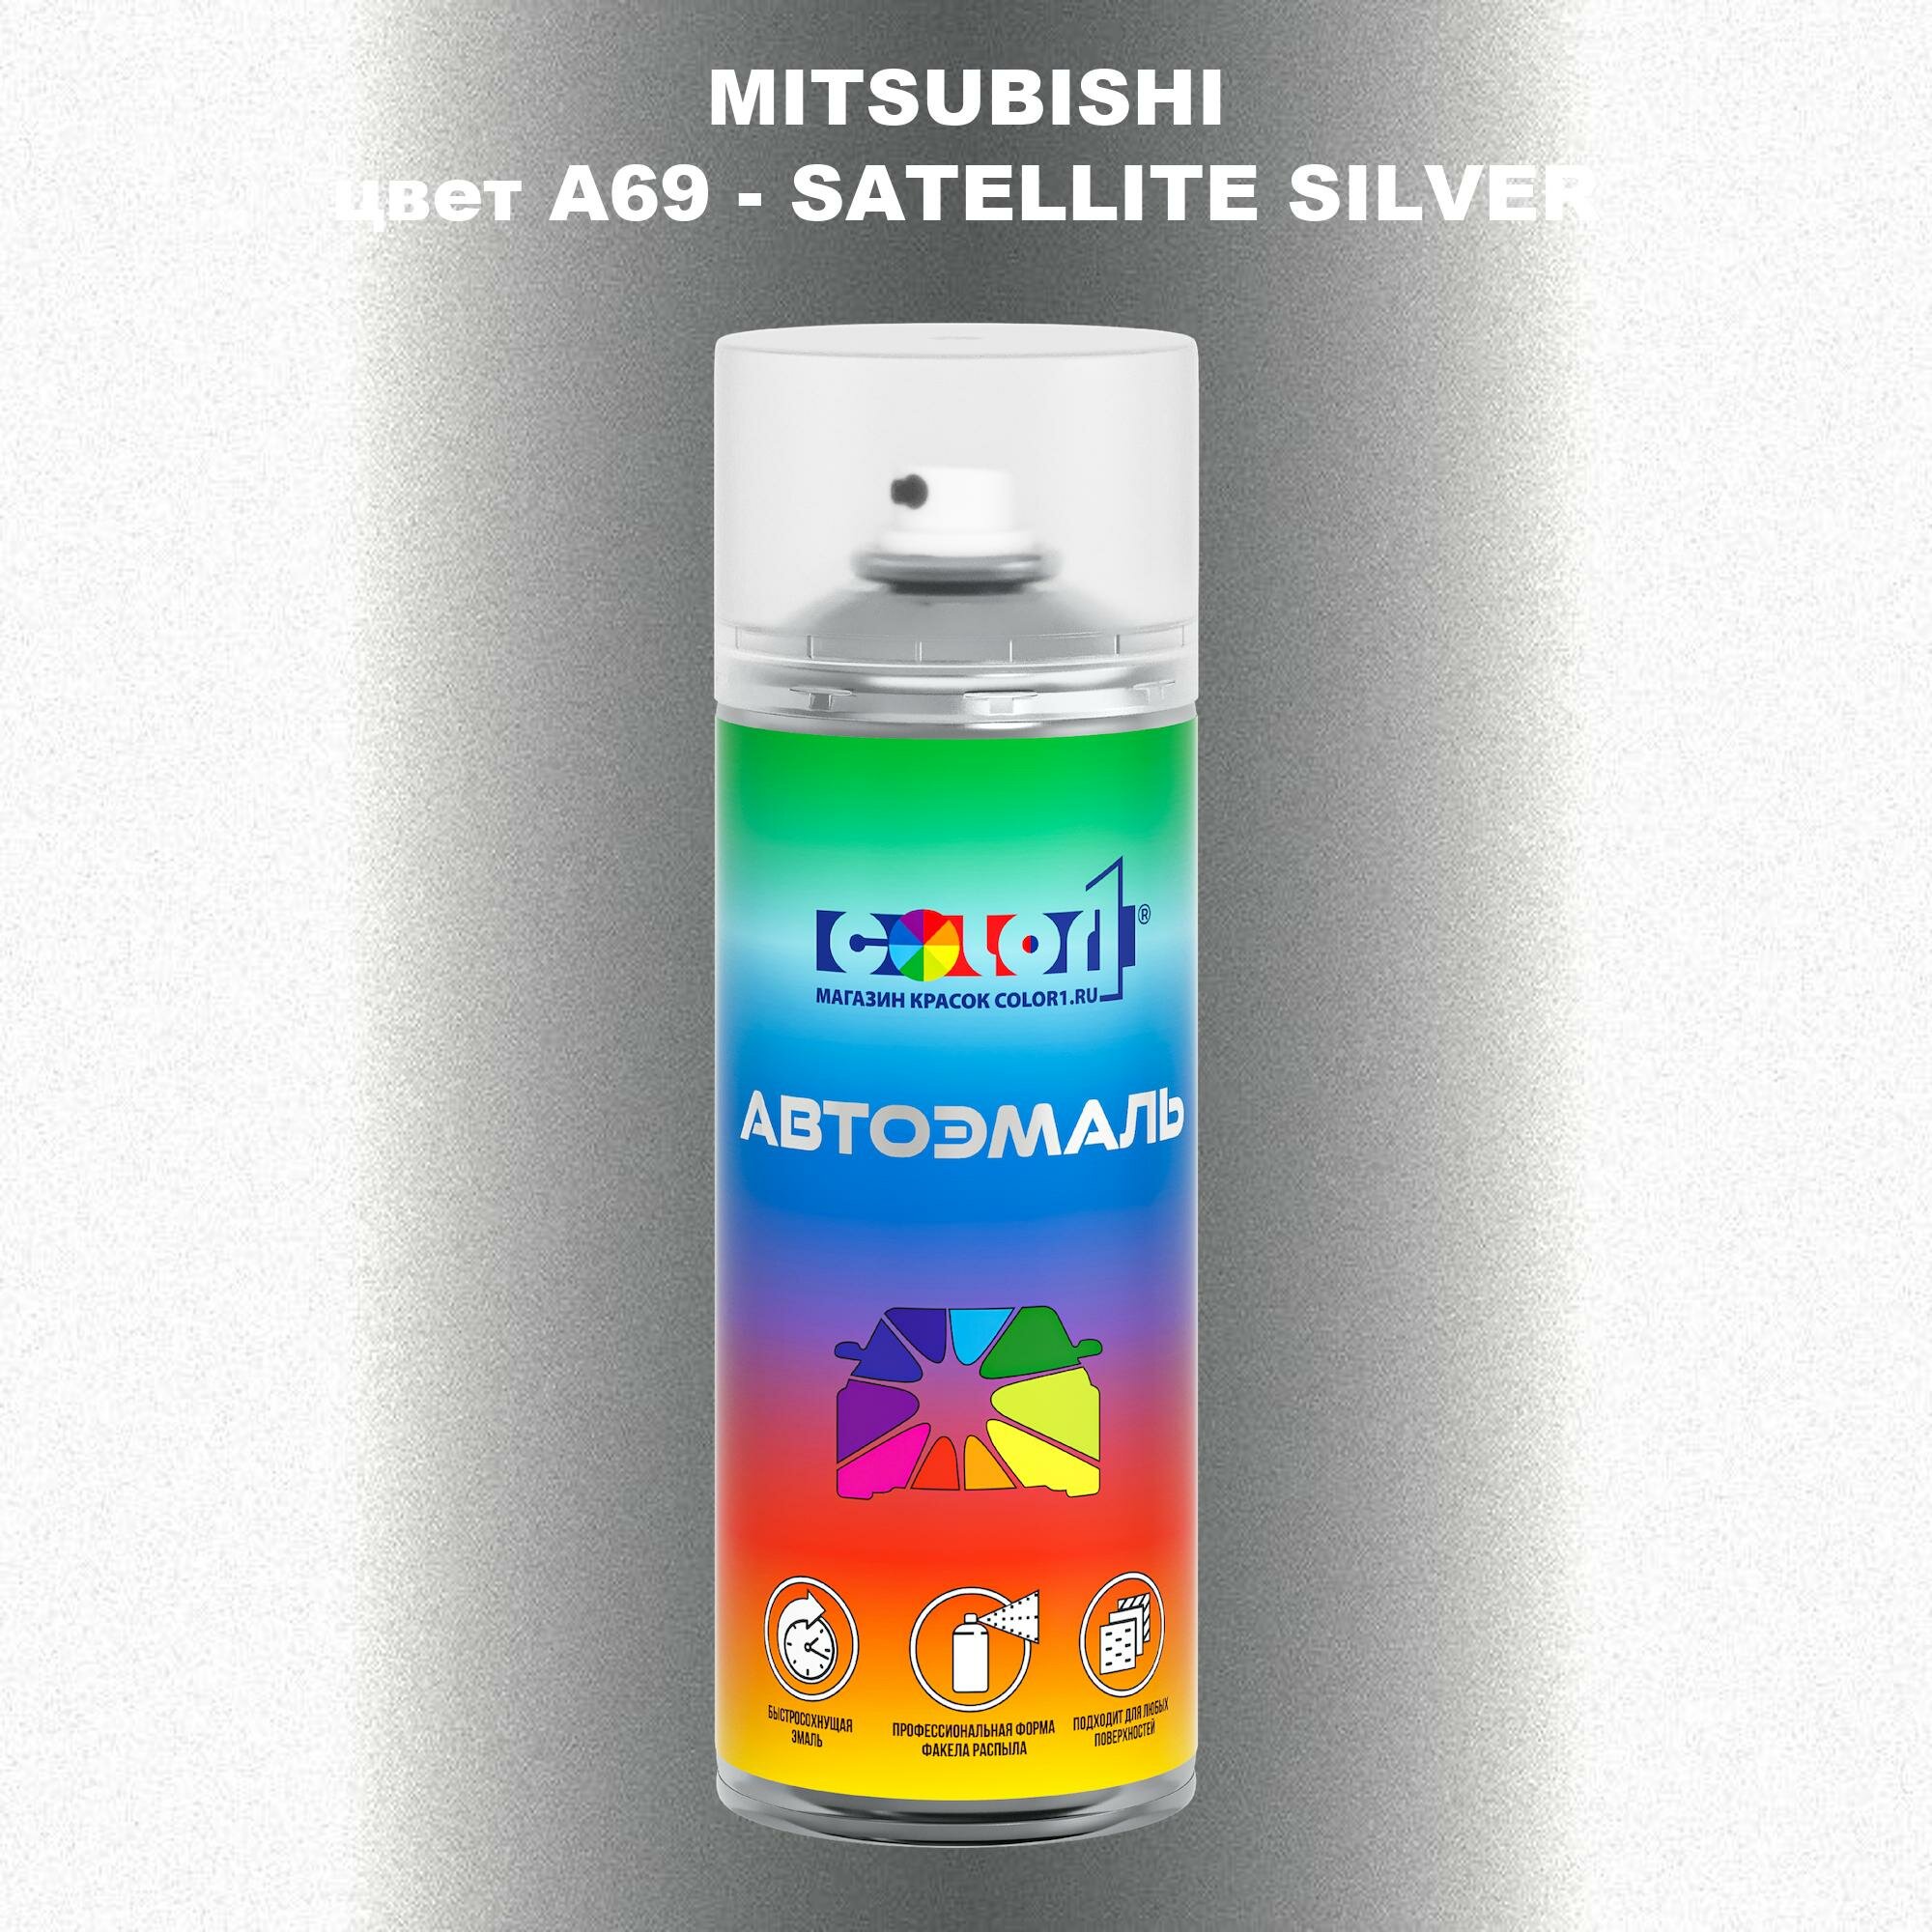 Аэрозольная краска COLOR1 для MITSUBISHI, цвет A69 - SATELLITE SILVER